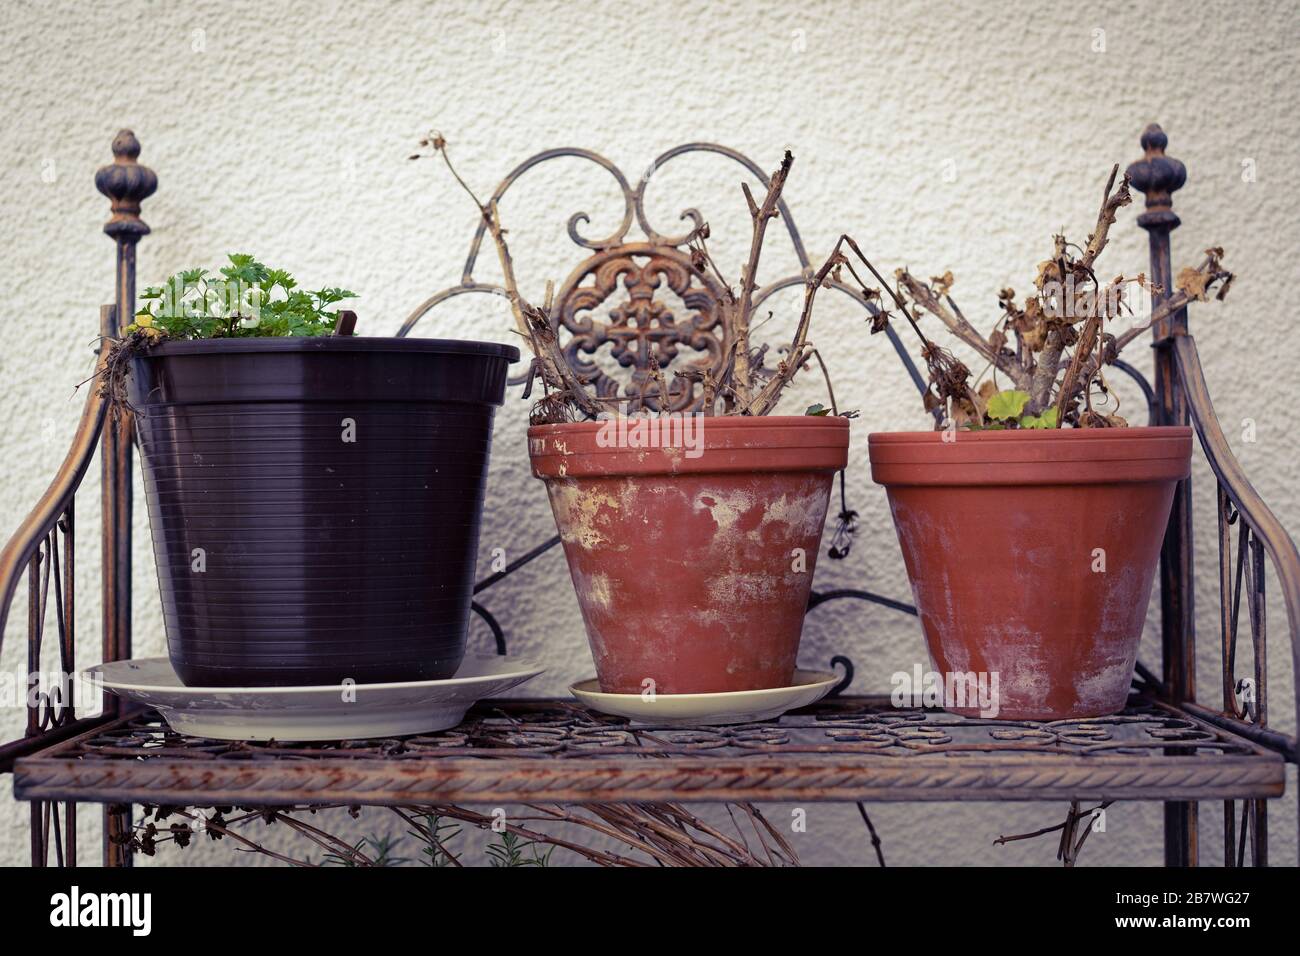 Awakening geranium and parsley in flower pots Stock Photo